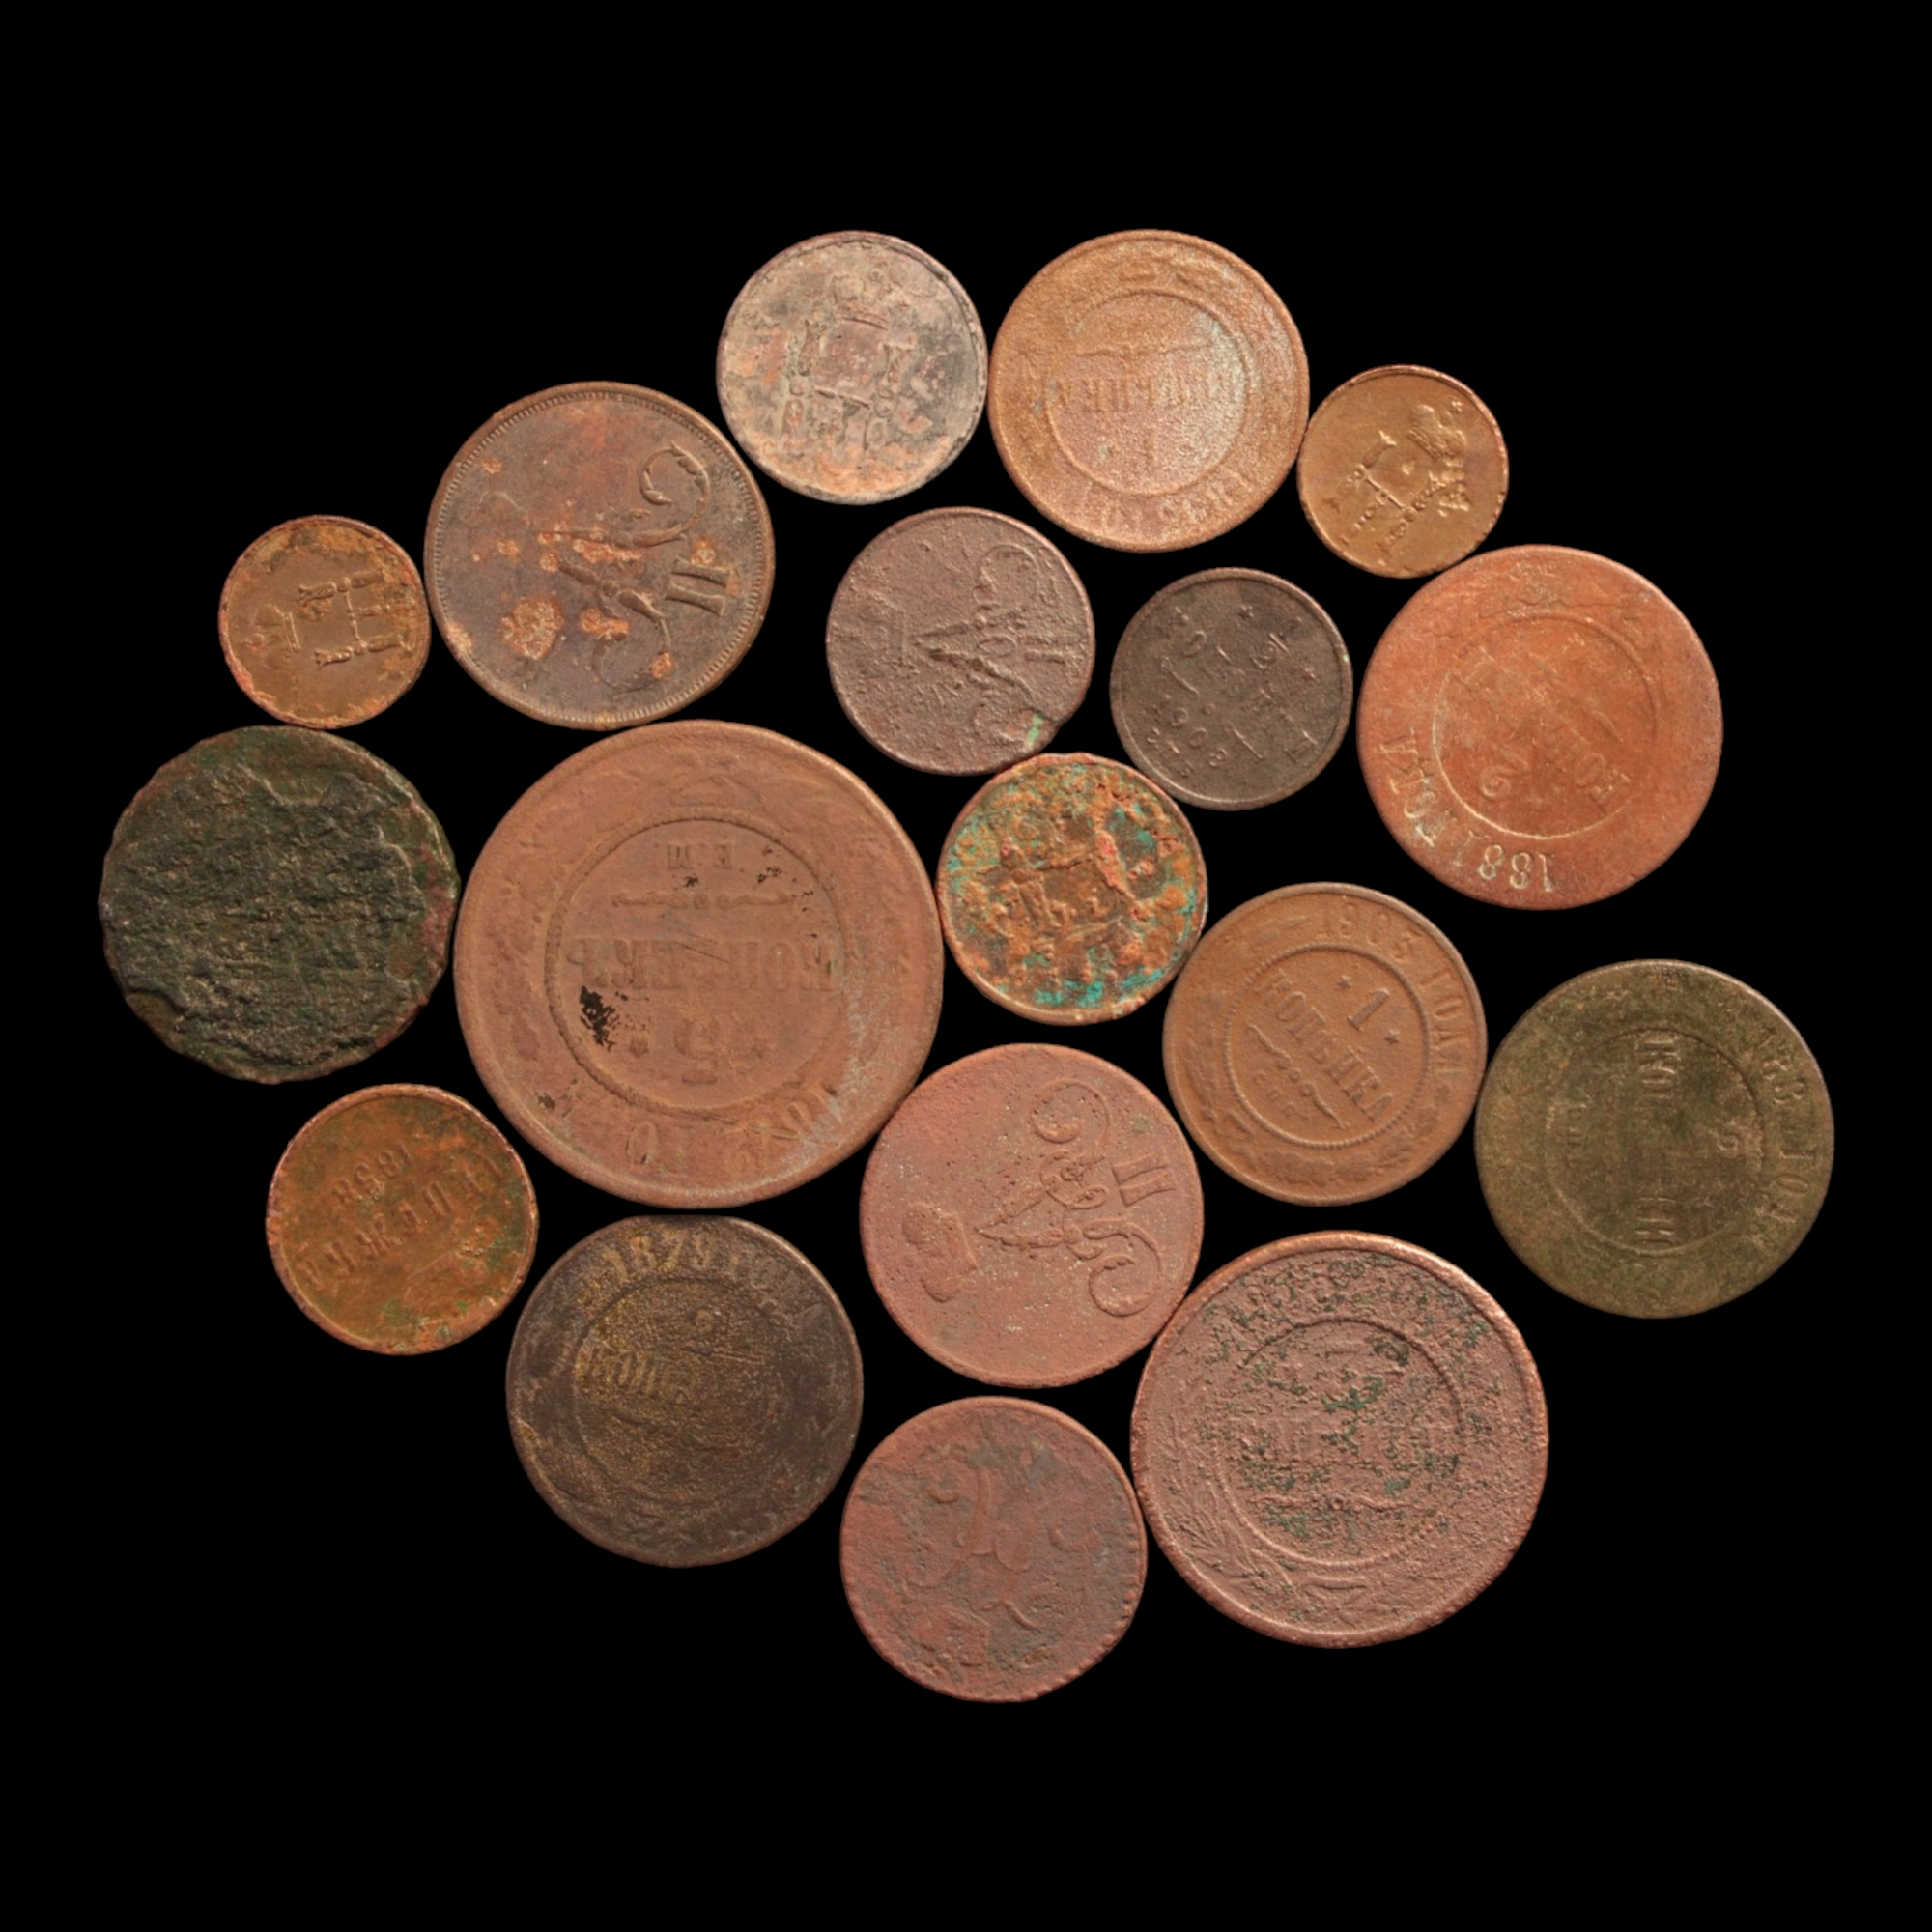 Russia, Lot of 18 Copper Coins - c. 1800s - Russian Empire